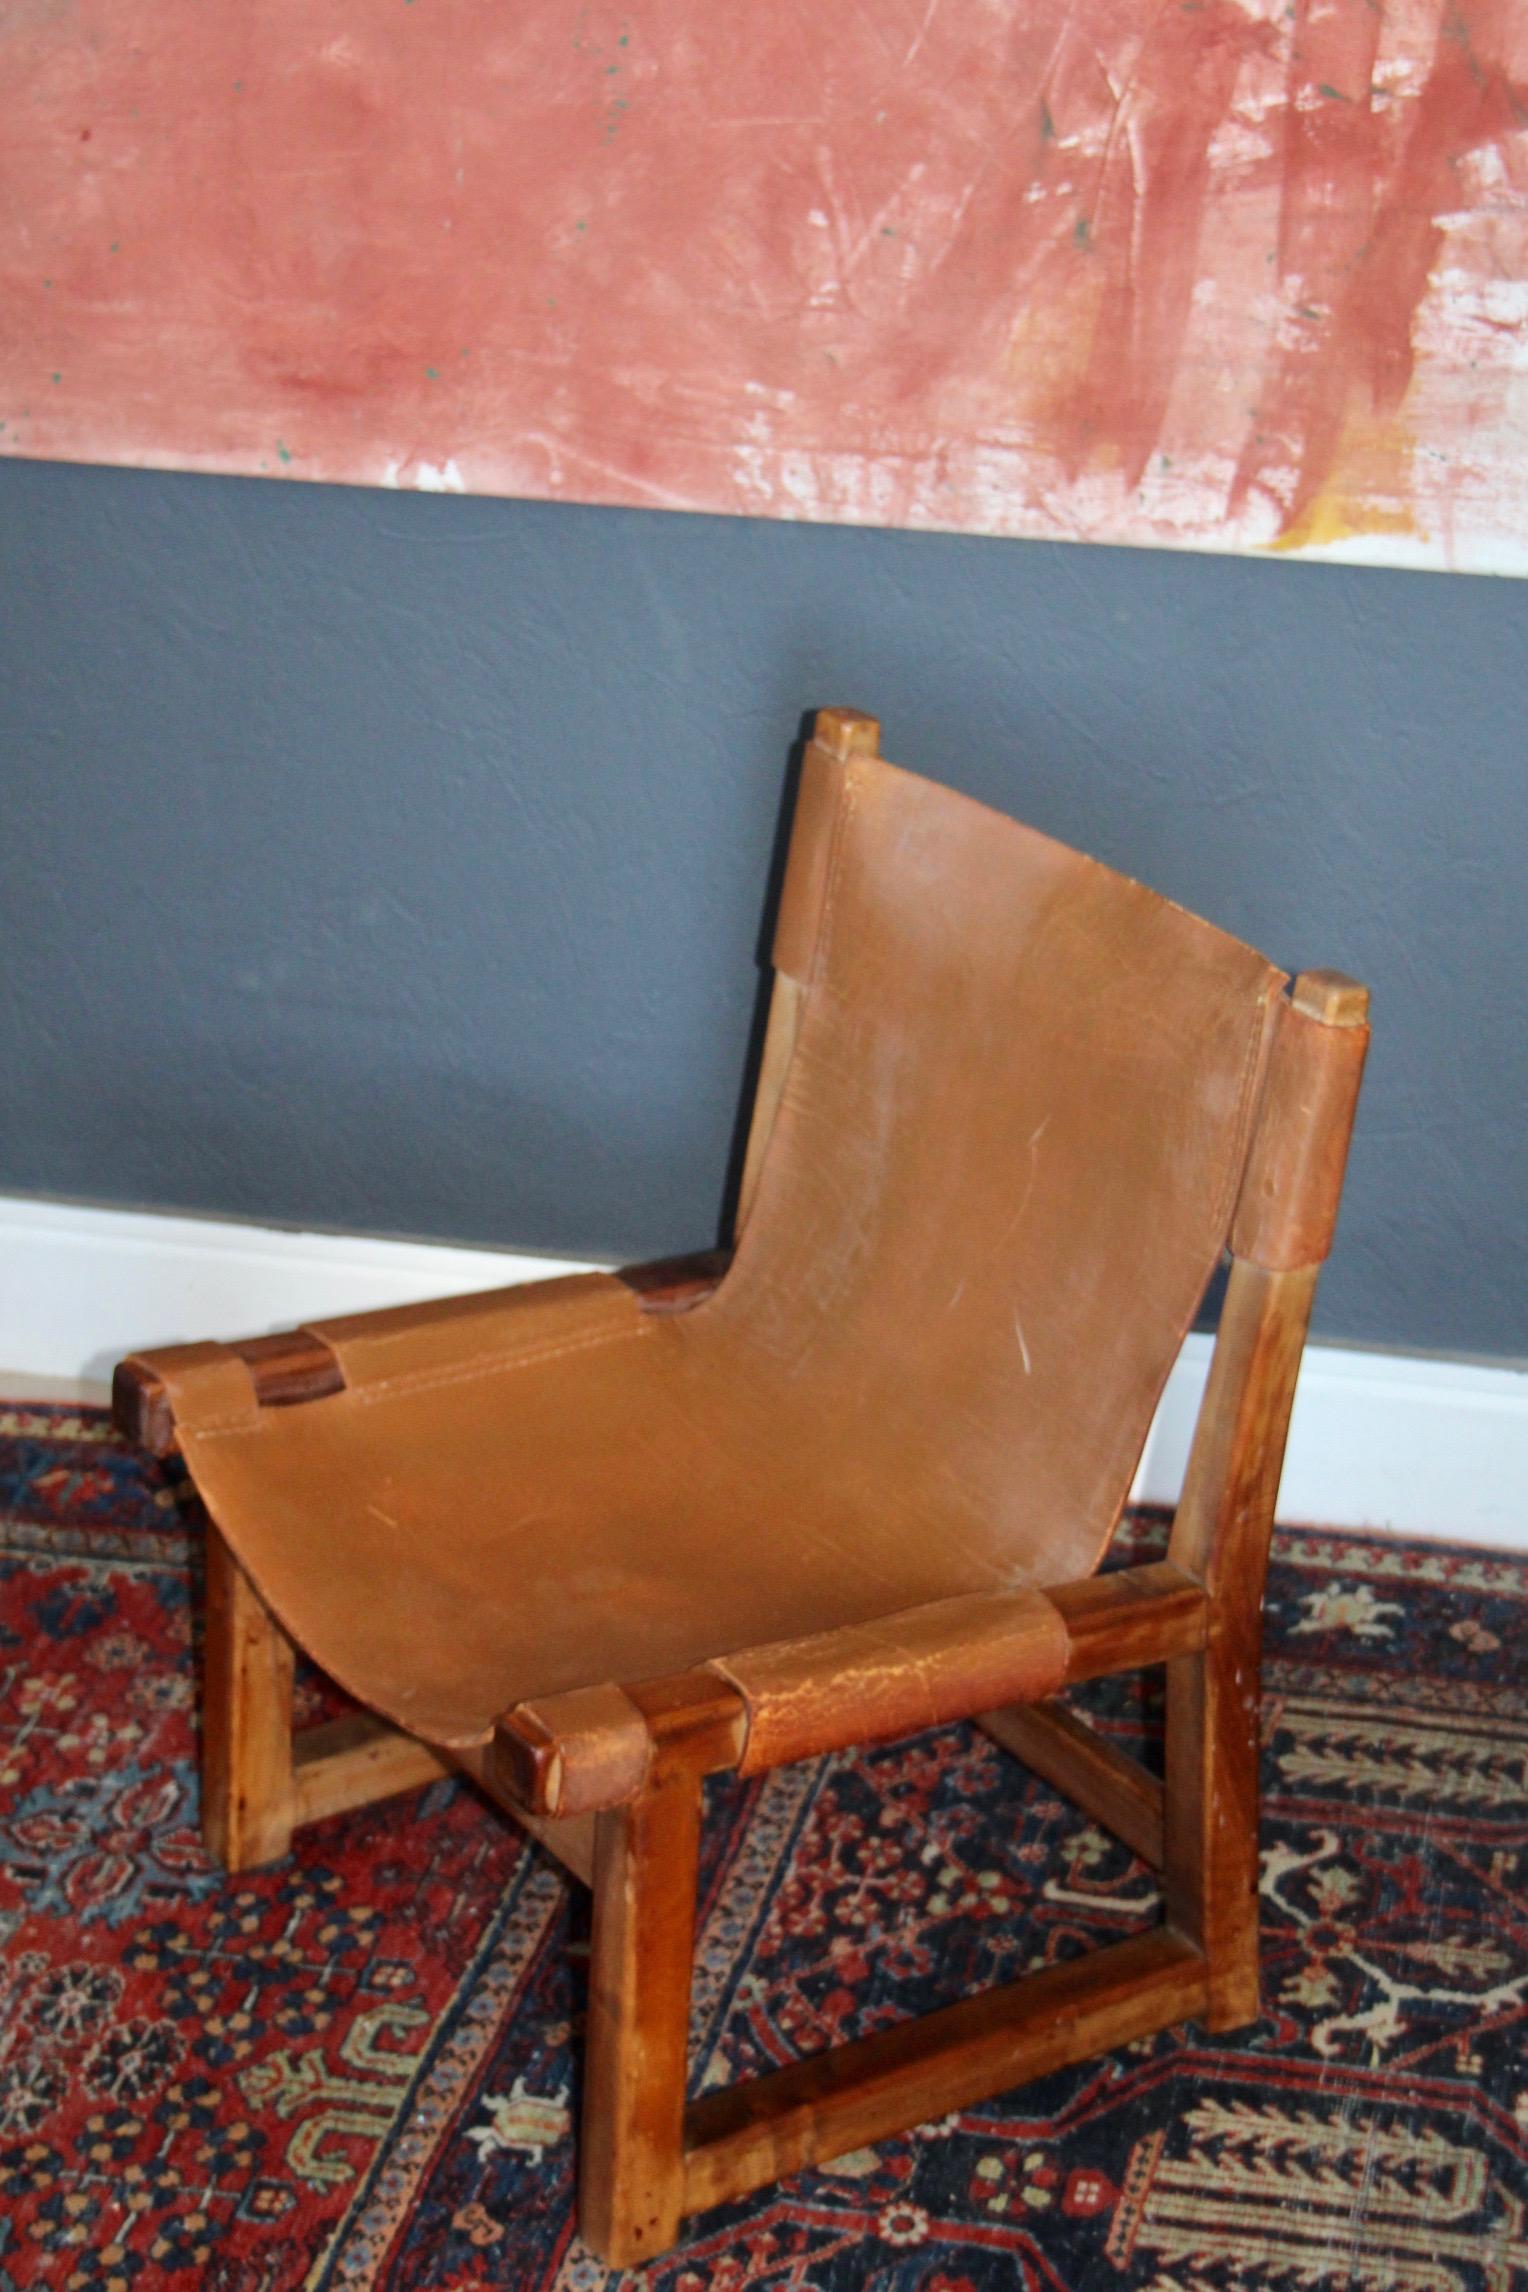 Paco Muñoz pour Darro, chaise pour enfants 'Riaza', samara, cuir, métal, Espagne, années 1960  Cette chaise longue basse, solide et robuste, a été conçue par Paco Muñoz dans les années 60. Le design de cette chaise de chasse, avec son cuir vaguement